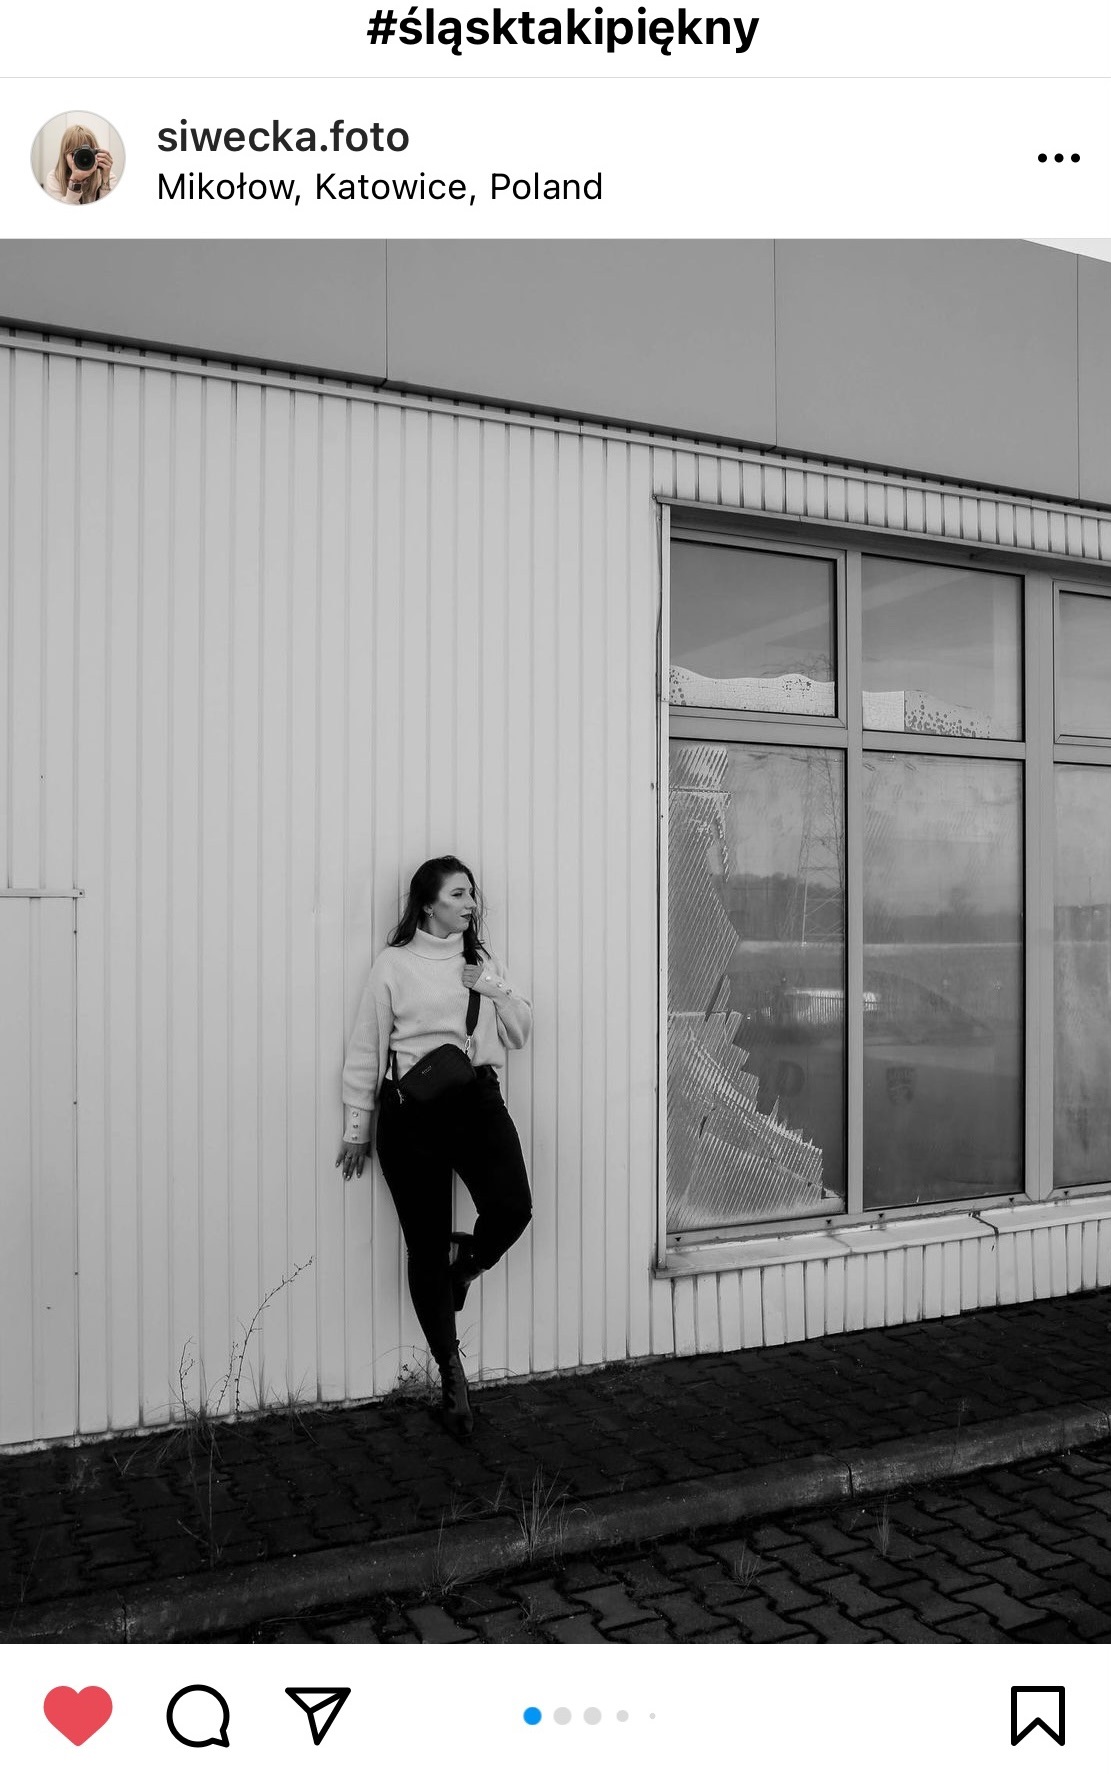 Kobieta oparta o budynek w stylu prl. W tle białe panele i wielkie okna. #śląsktakipiękny